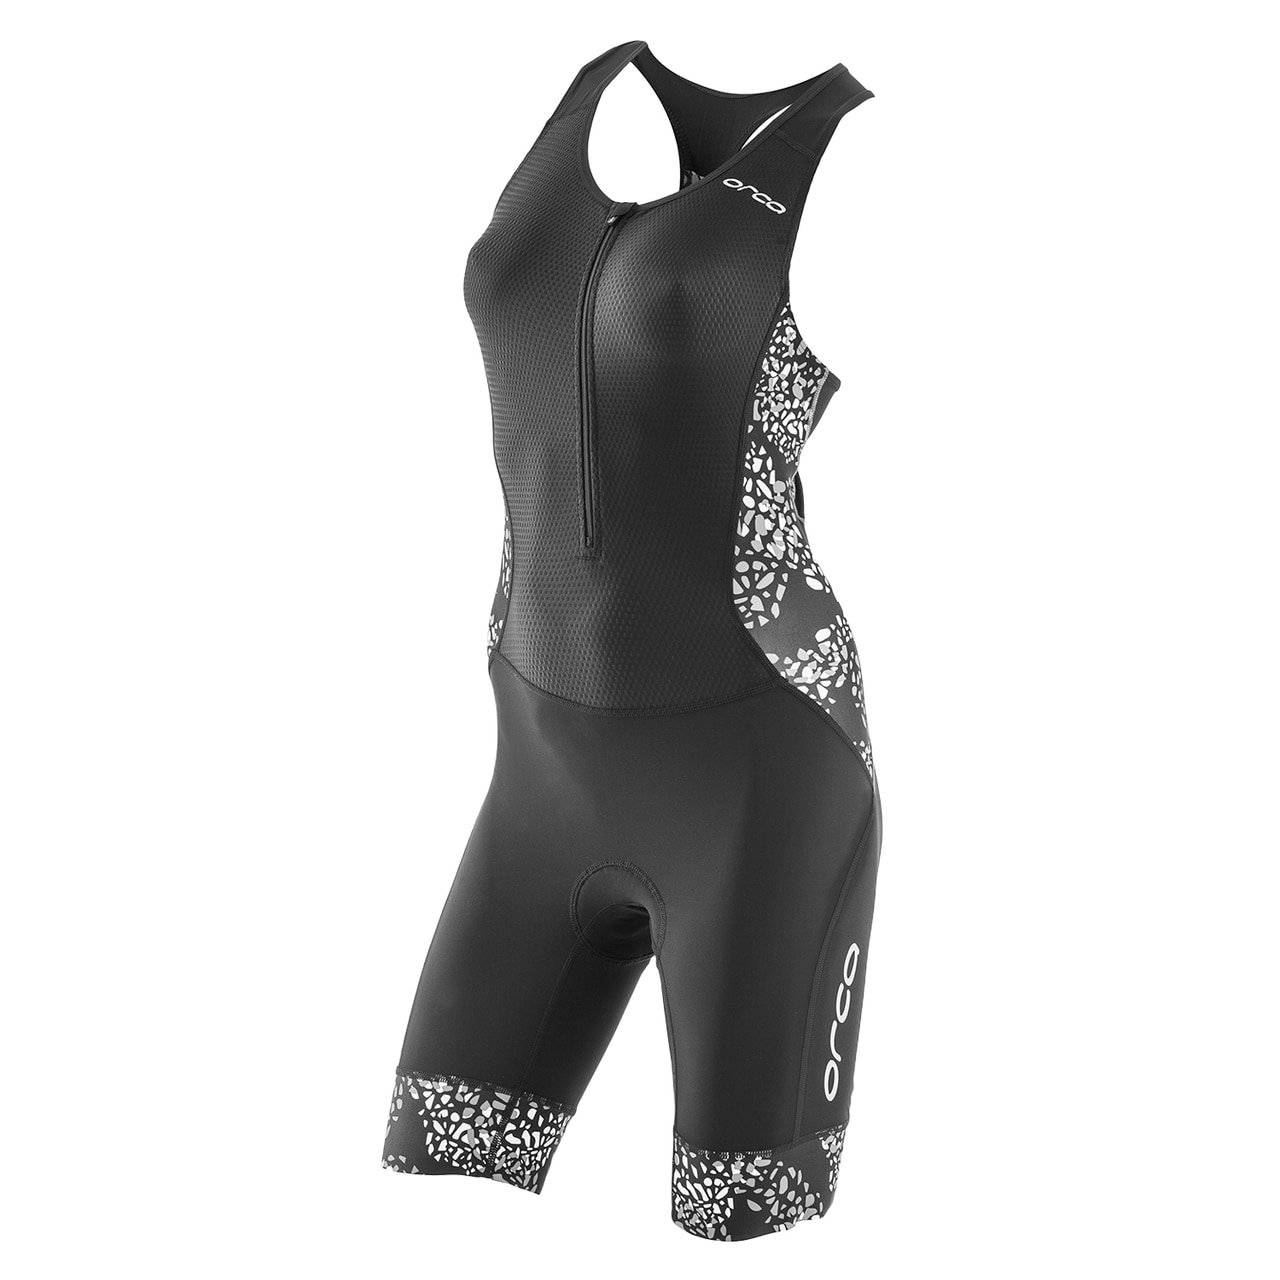 Комбинезон для триатлона Orca 226 Kompress Race suit 2018, женский, S, черный/белый, HVD7, изображение  - НаВелосипеде.рф